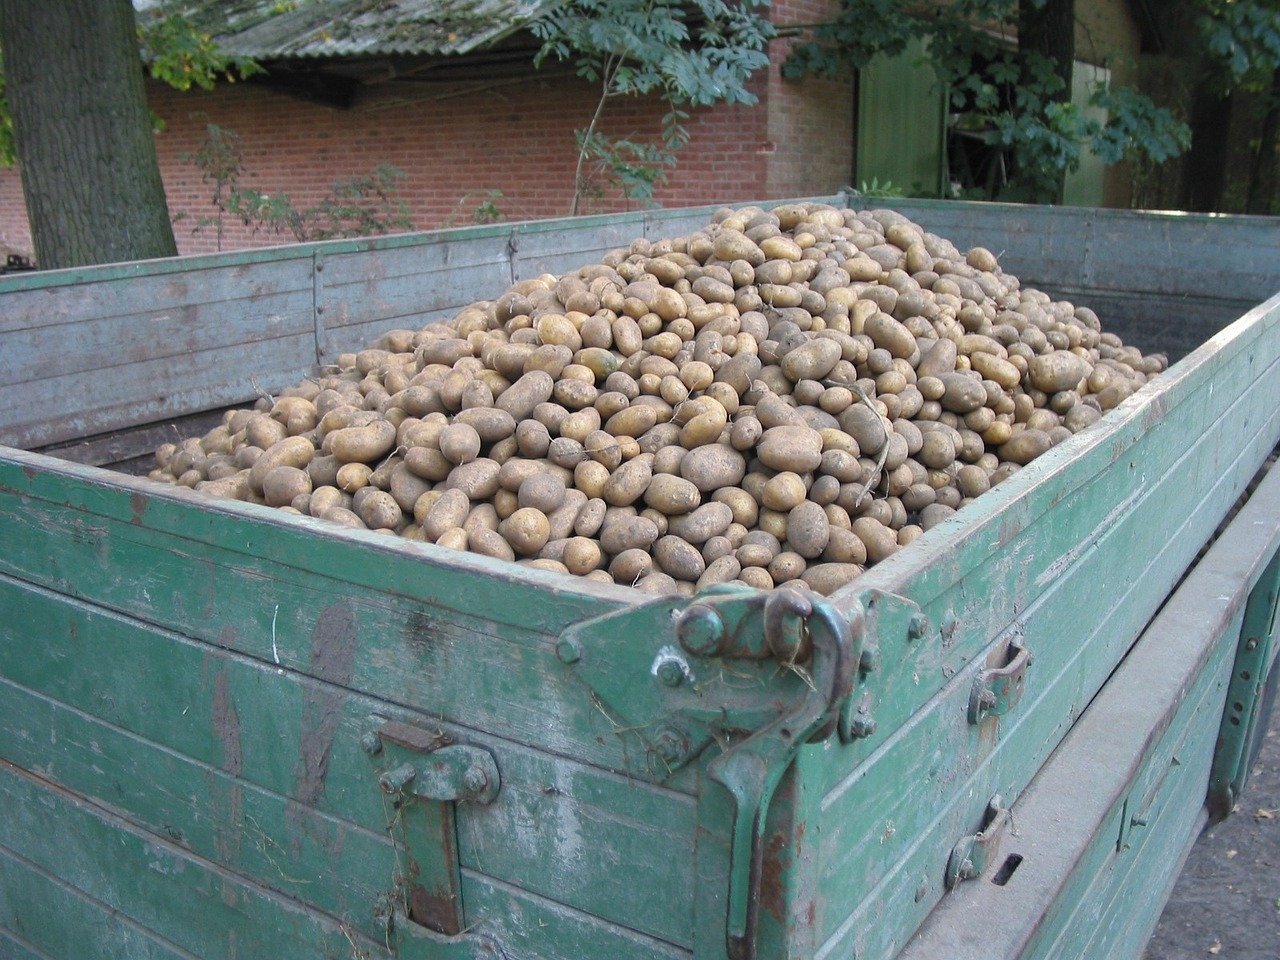 

Свежий урожай картофеля в Удмуртии меньше прошлогоднего

